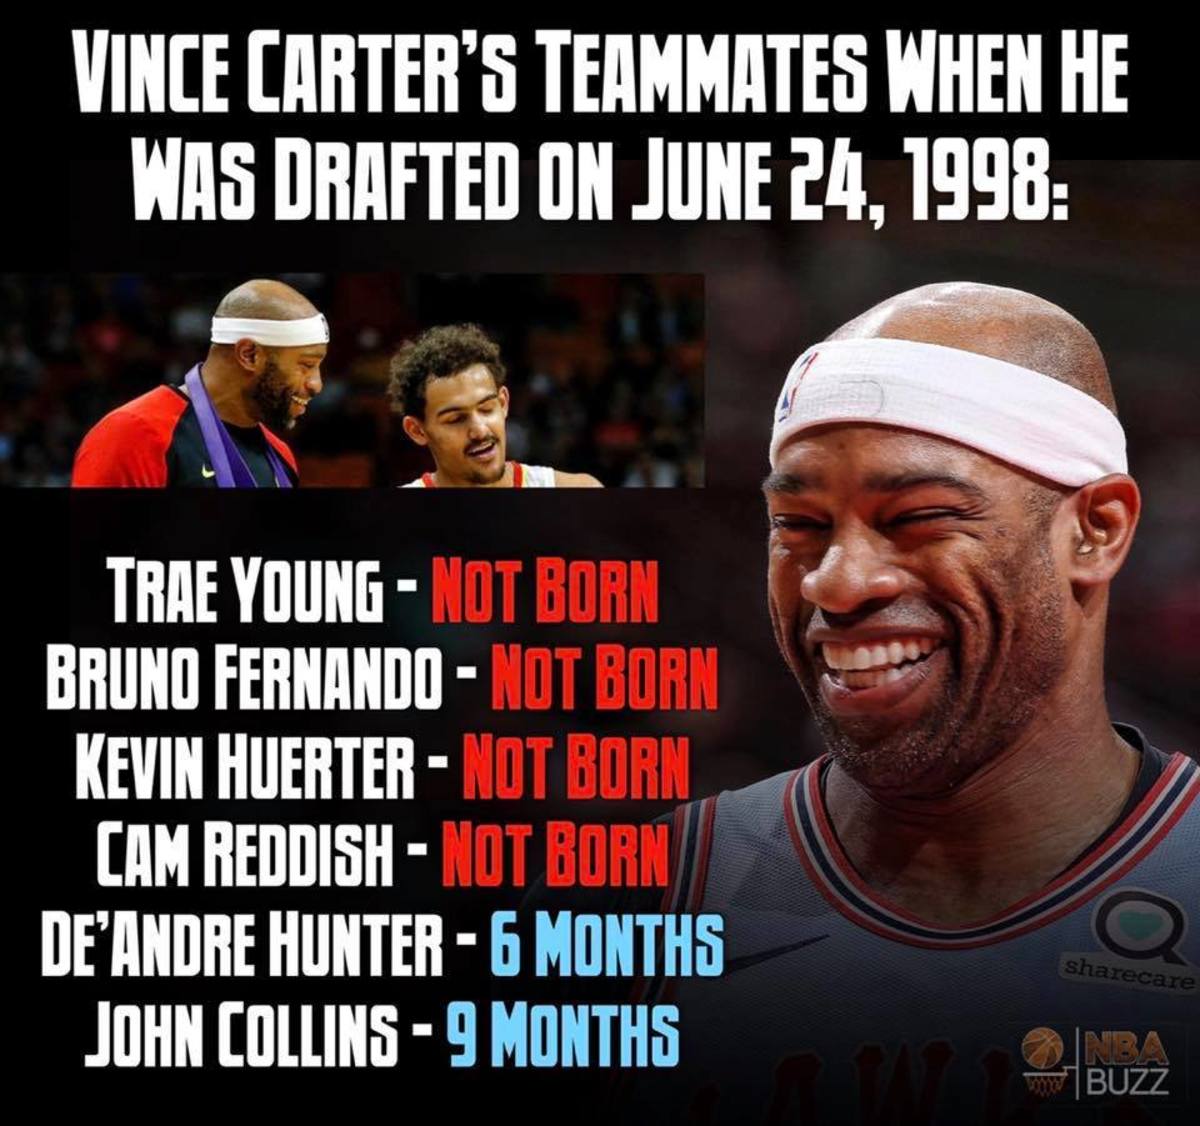 (via NBA Buzz)